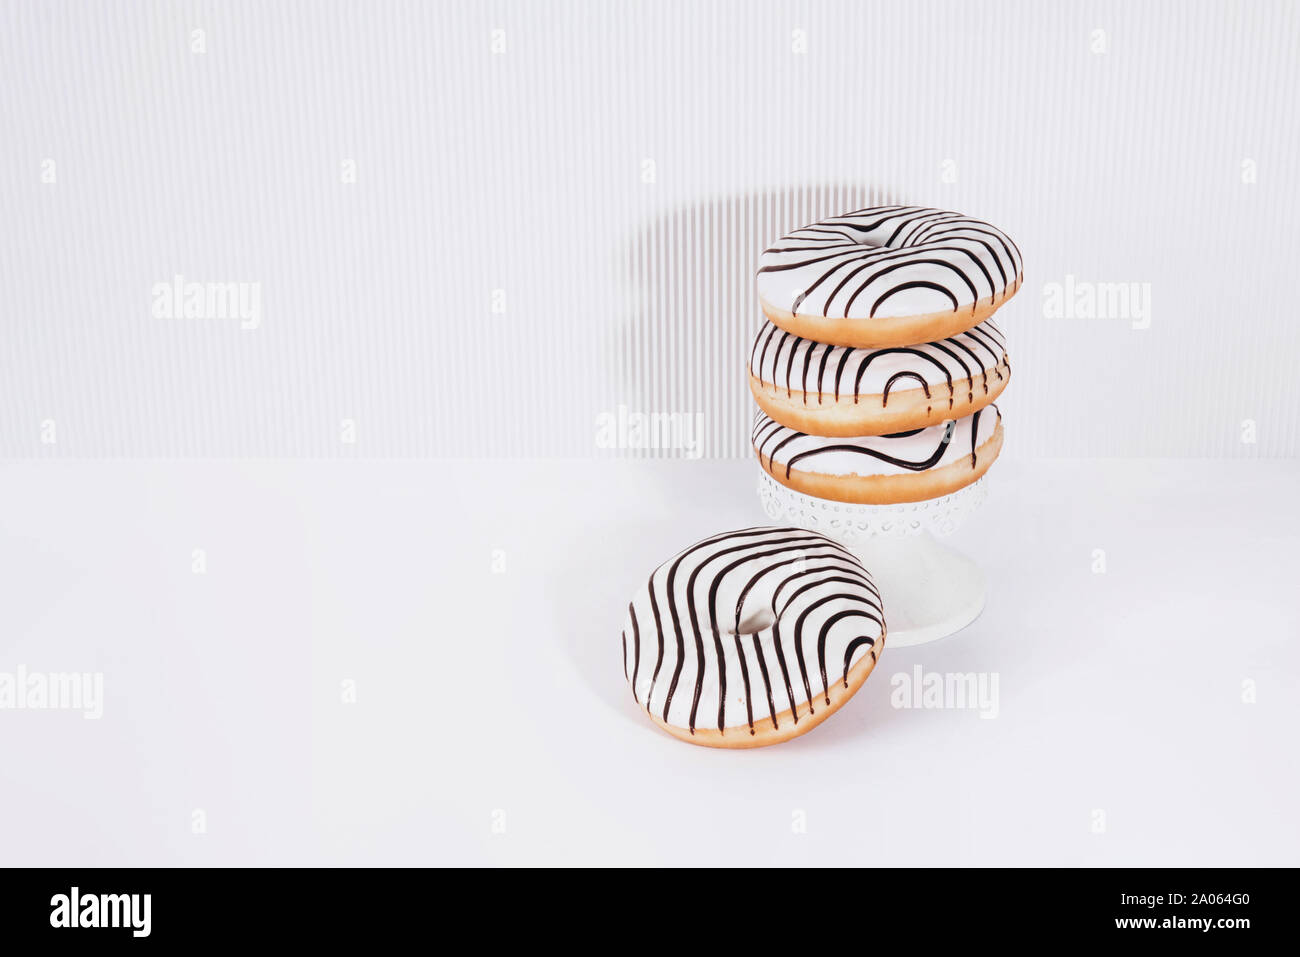 Gestreifte Donuts auf einem weißen Hintergrund. Stockfoto